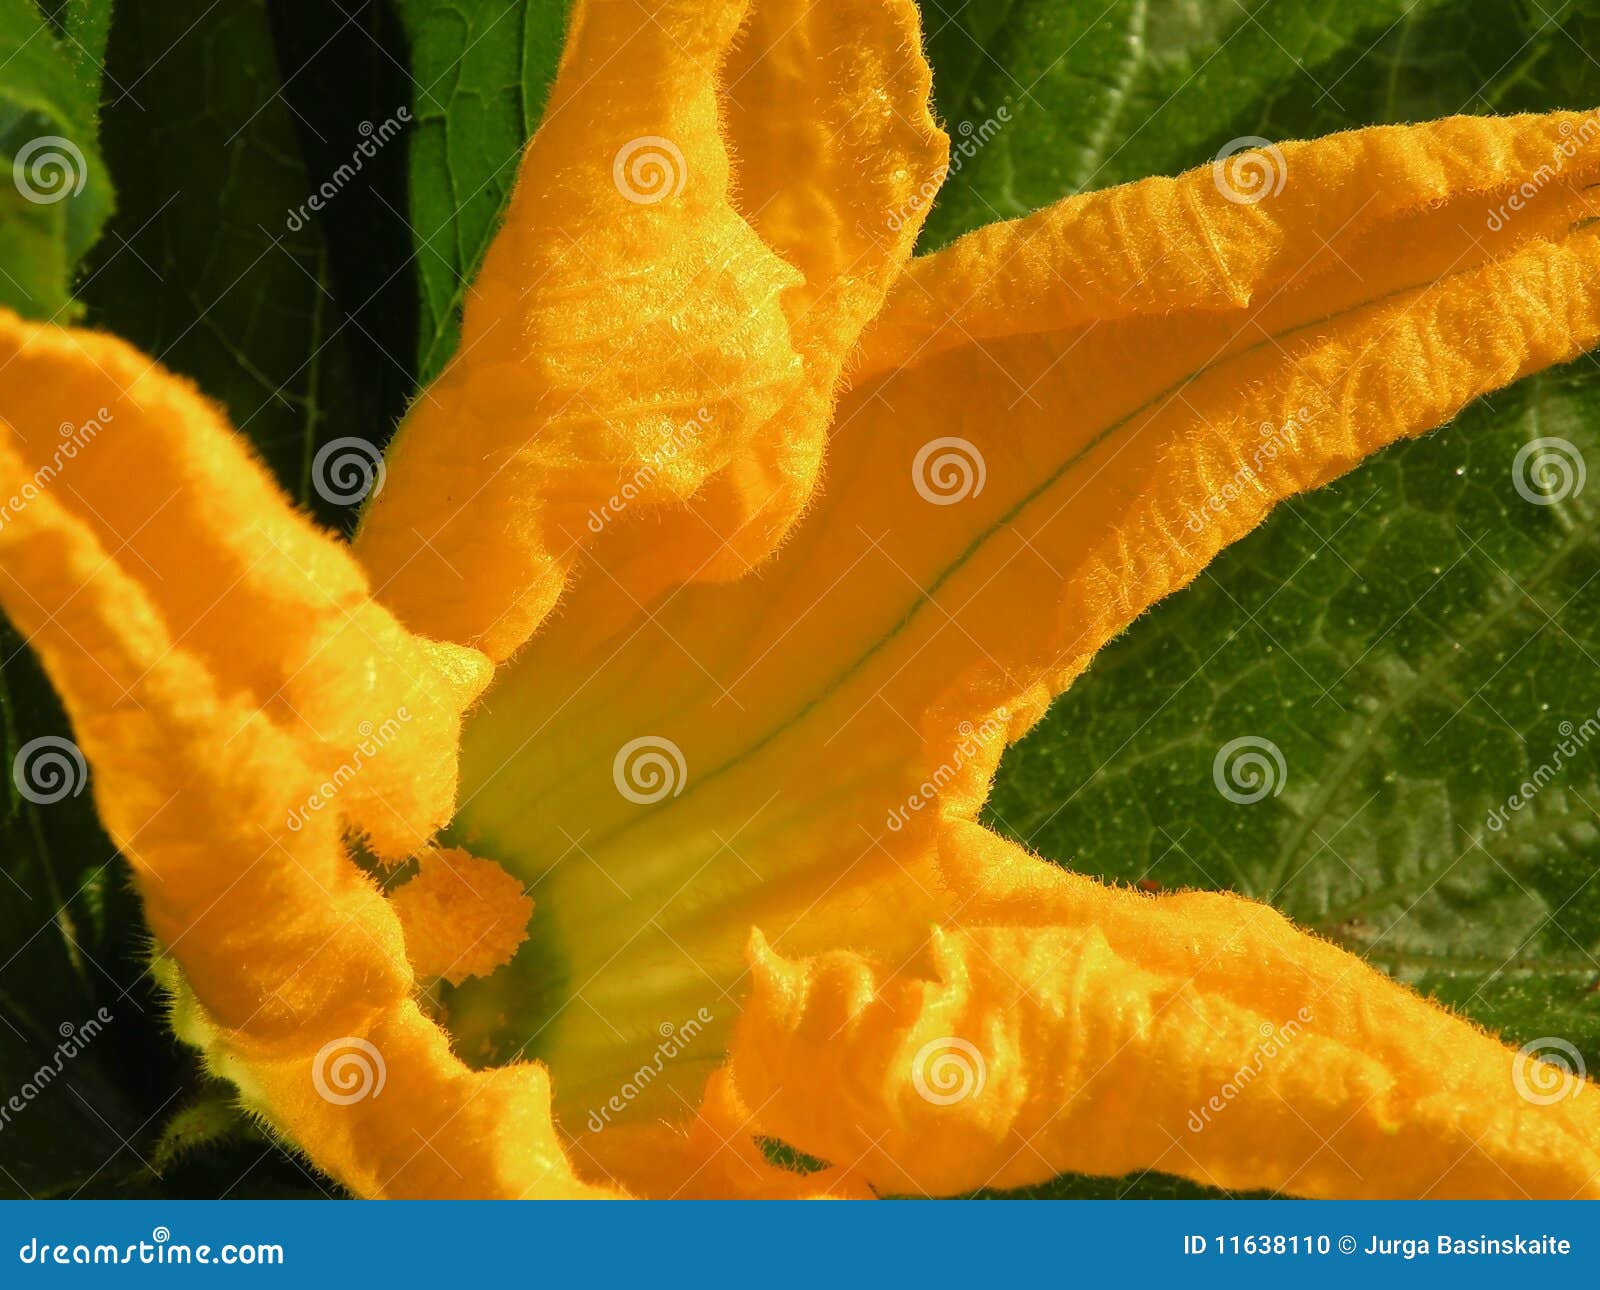 绿皮胡瓜花夏南瓜库存照片 图片包括有问题的 开花的 黄色 食物 背包 蔬菜 叶子 绽放